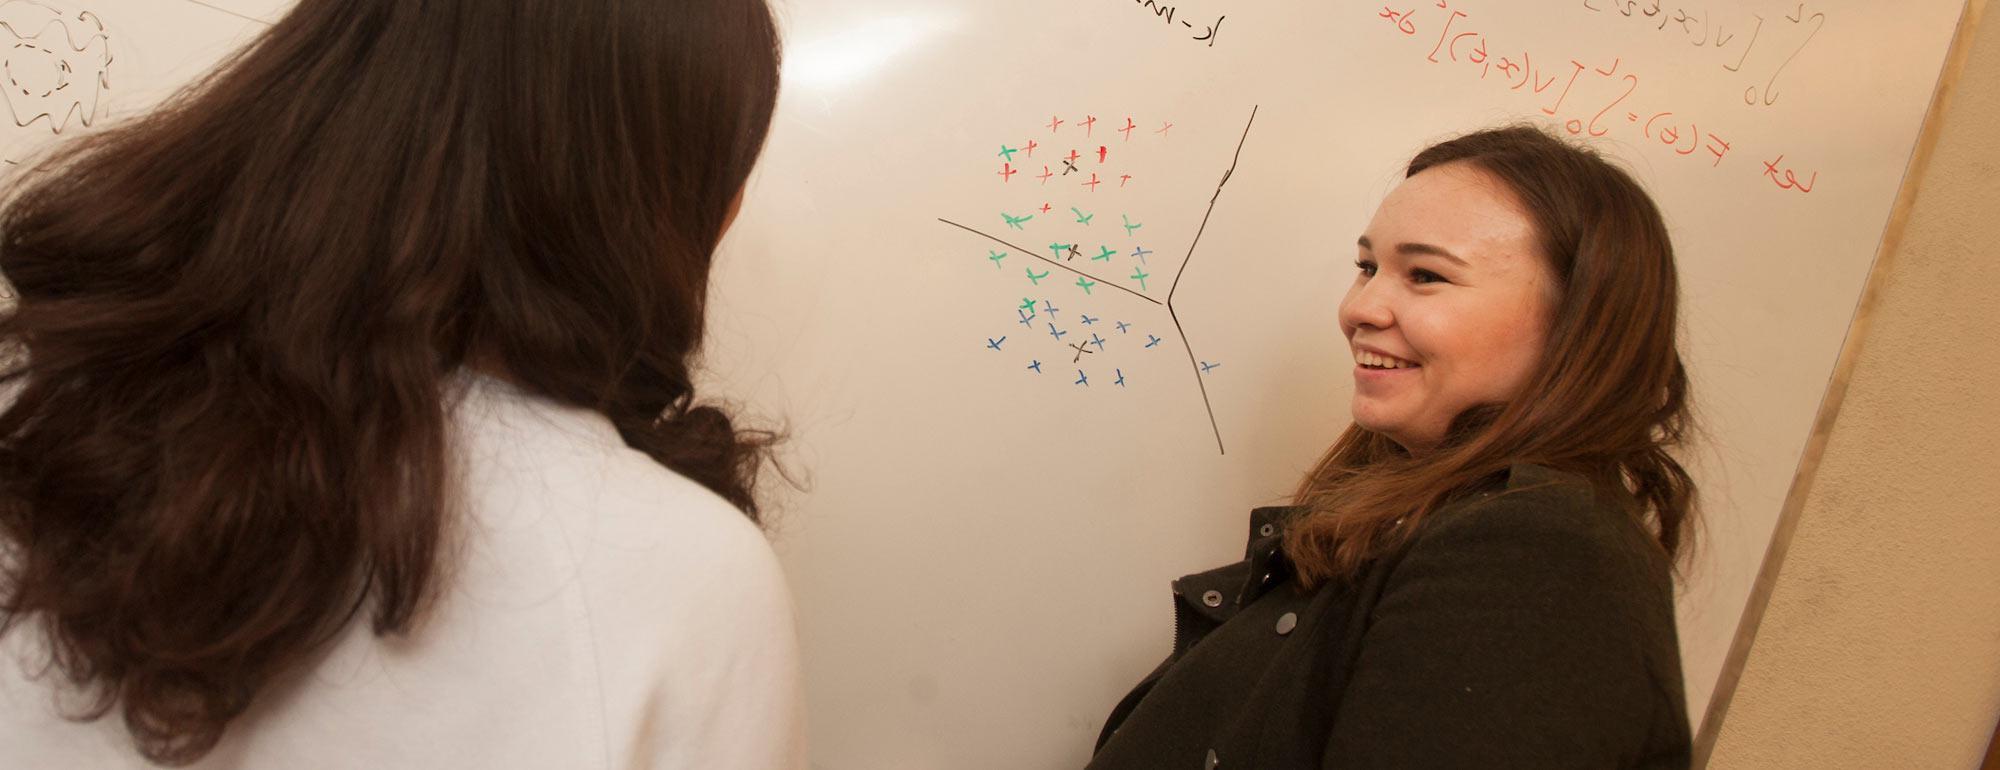 两个女学生在白板上讨论一道数学题